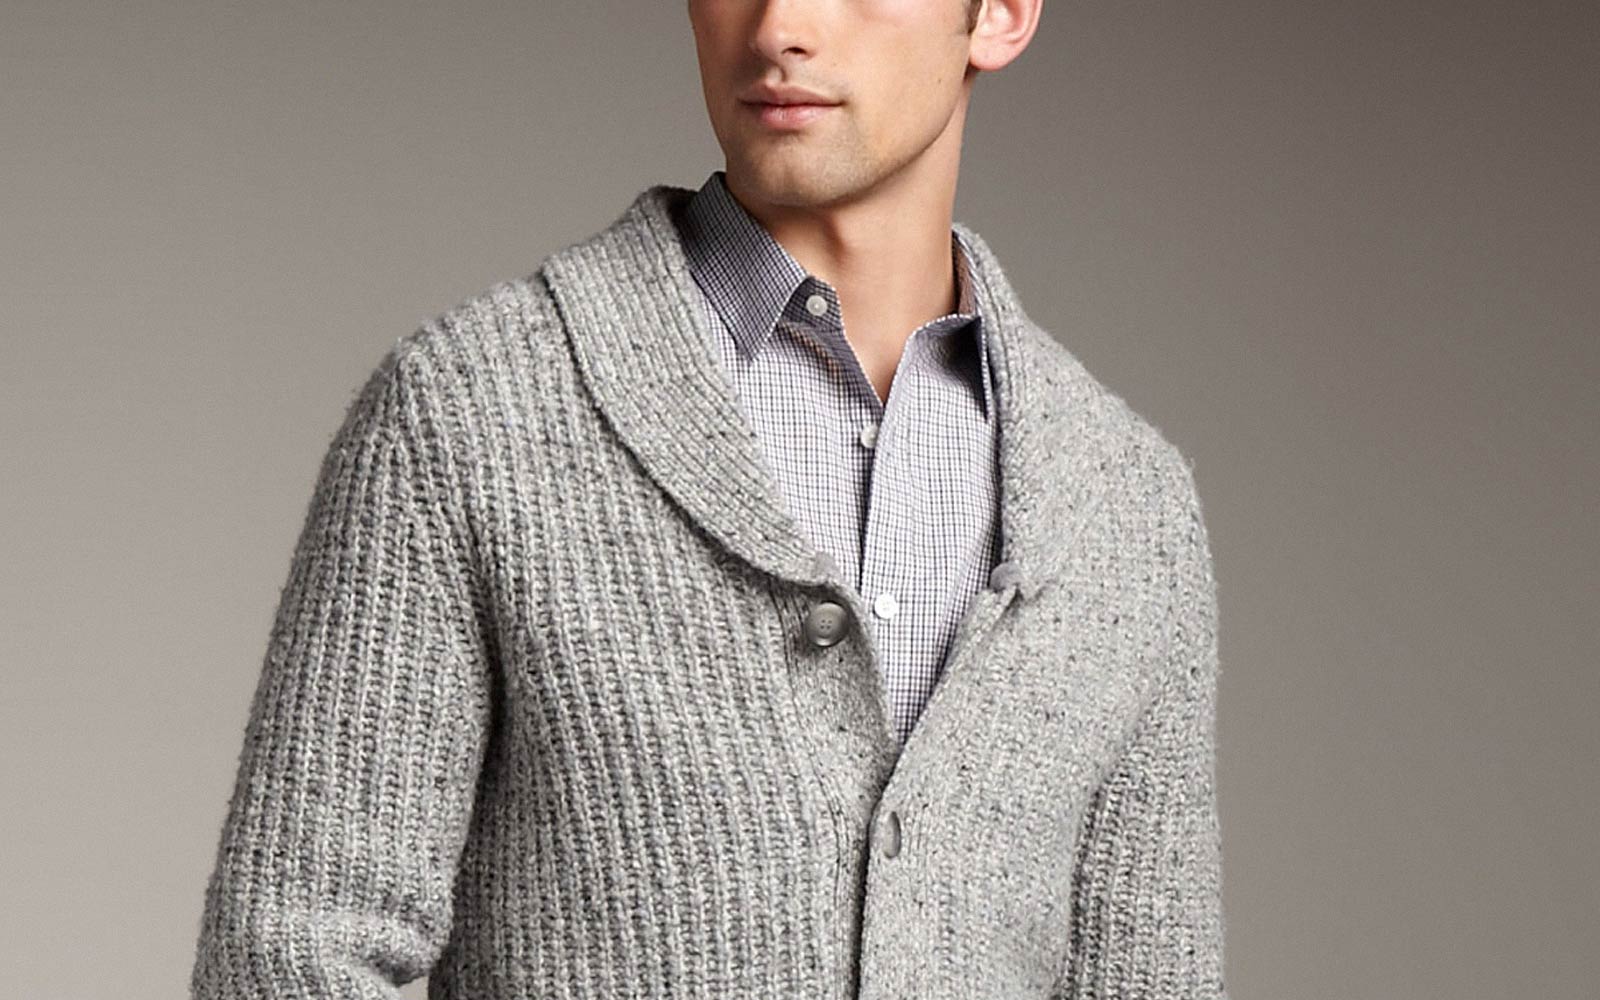 Man wearing grey Shawl Neck Sweater